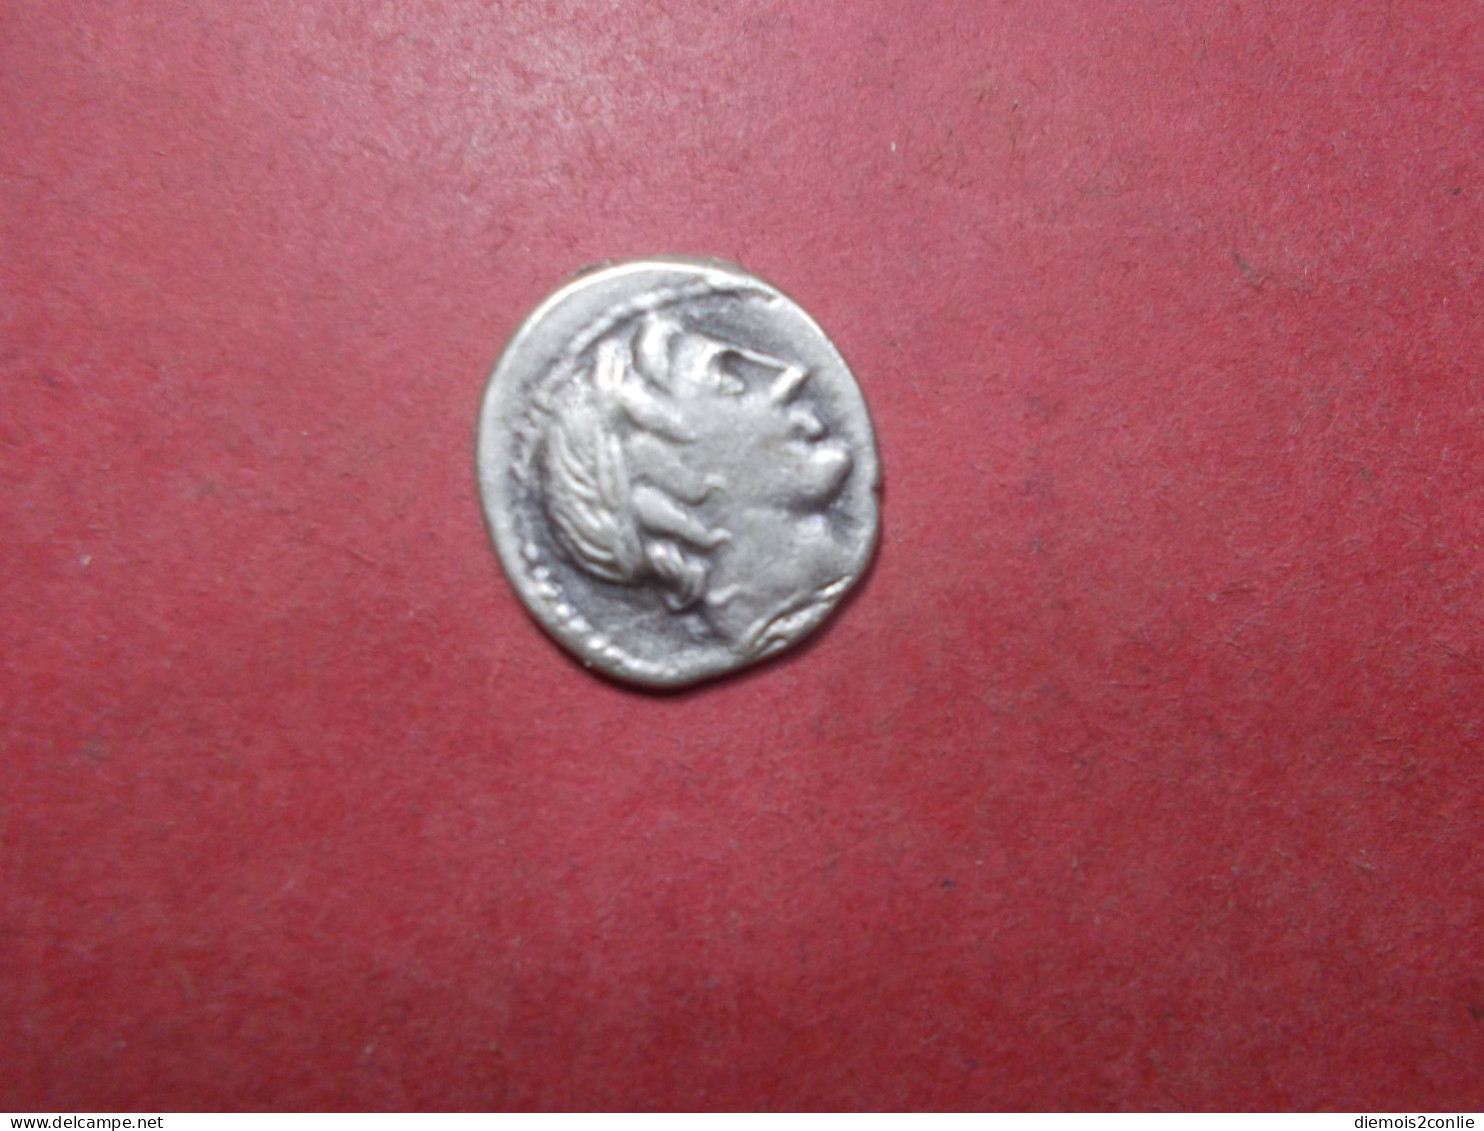 REPLIQUE COPIE Pièce Monnaie Denier Republique Romaine à Définir (P13) - République (-280 à -27)